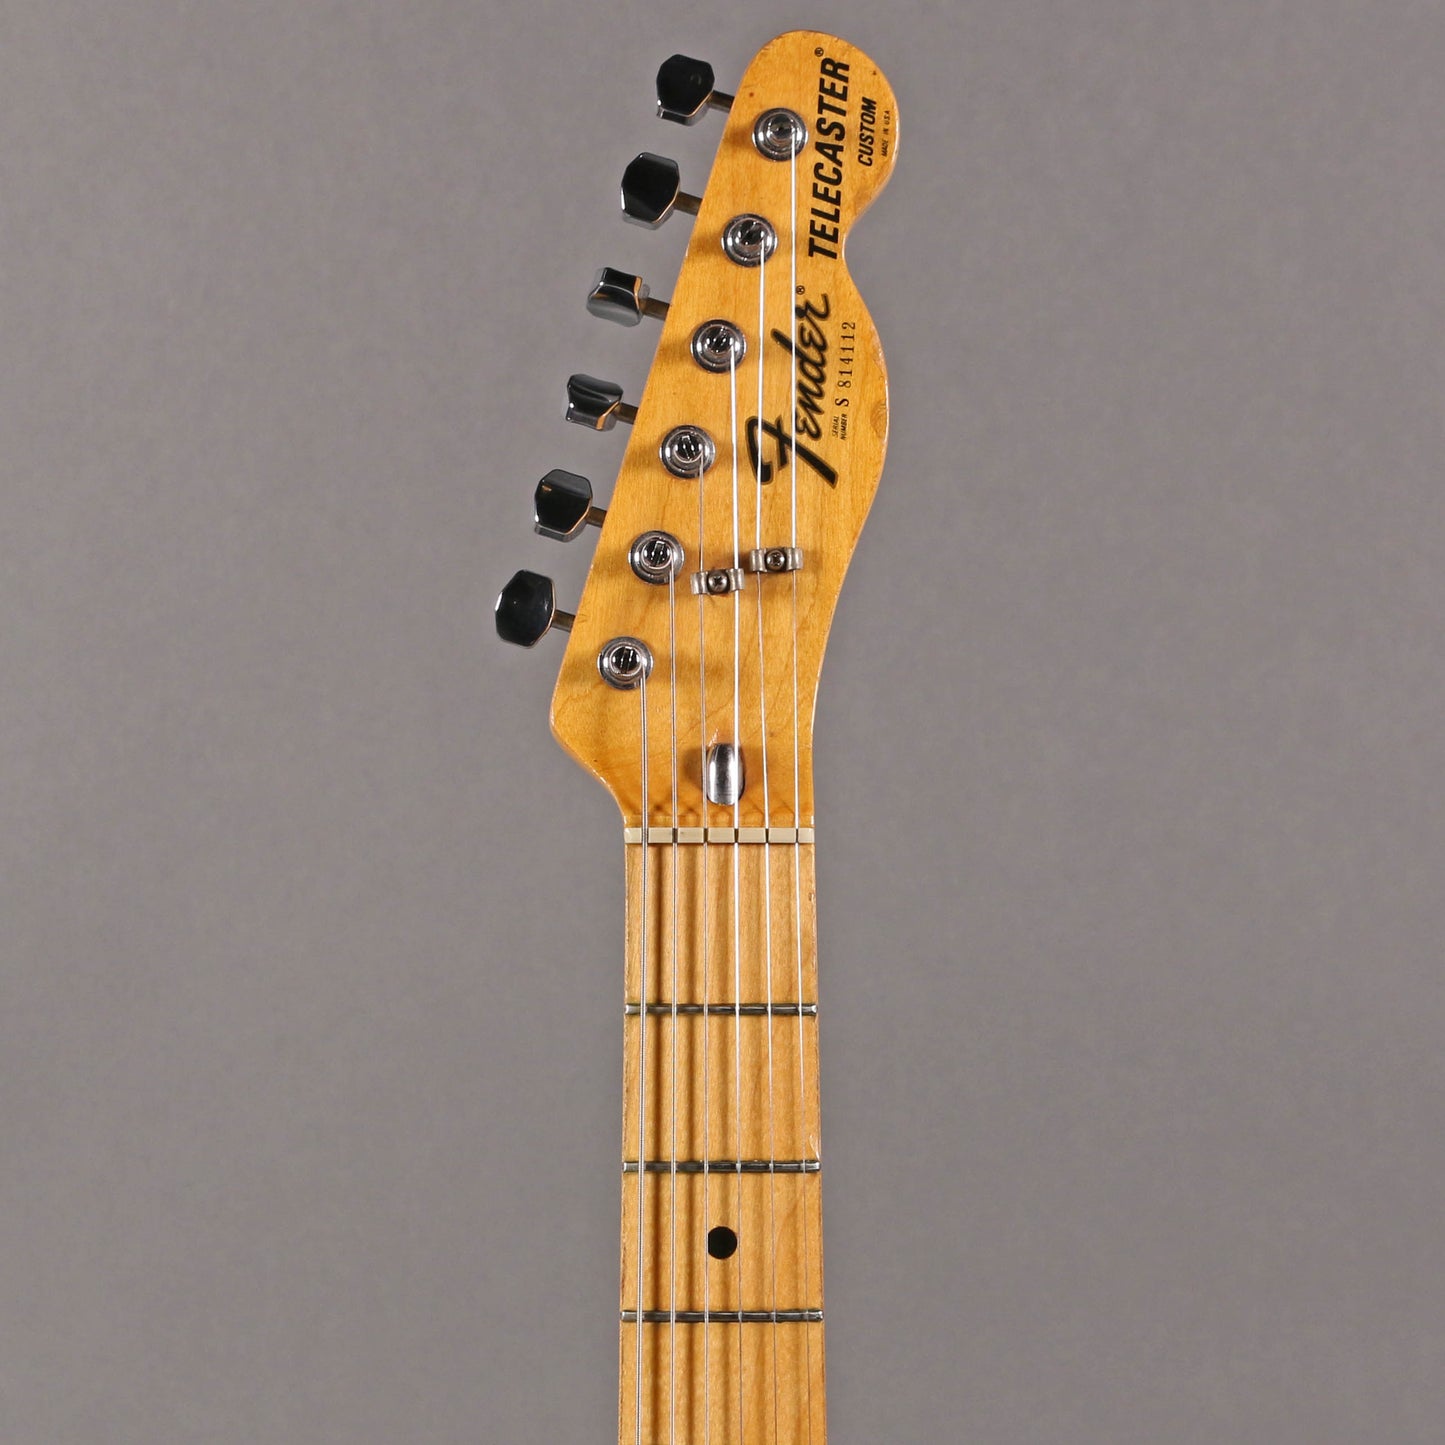 1978 Fender Telecaster Custom